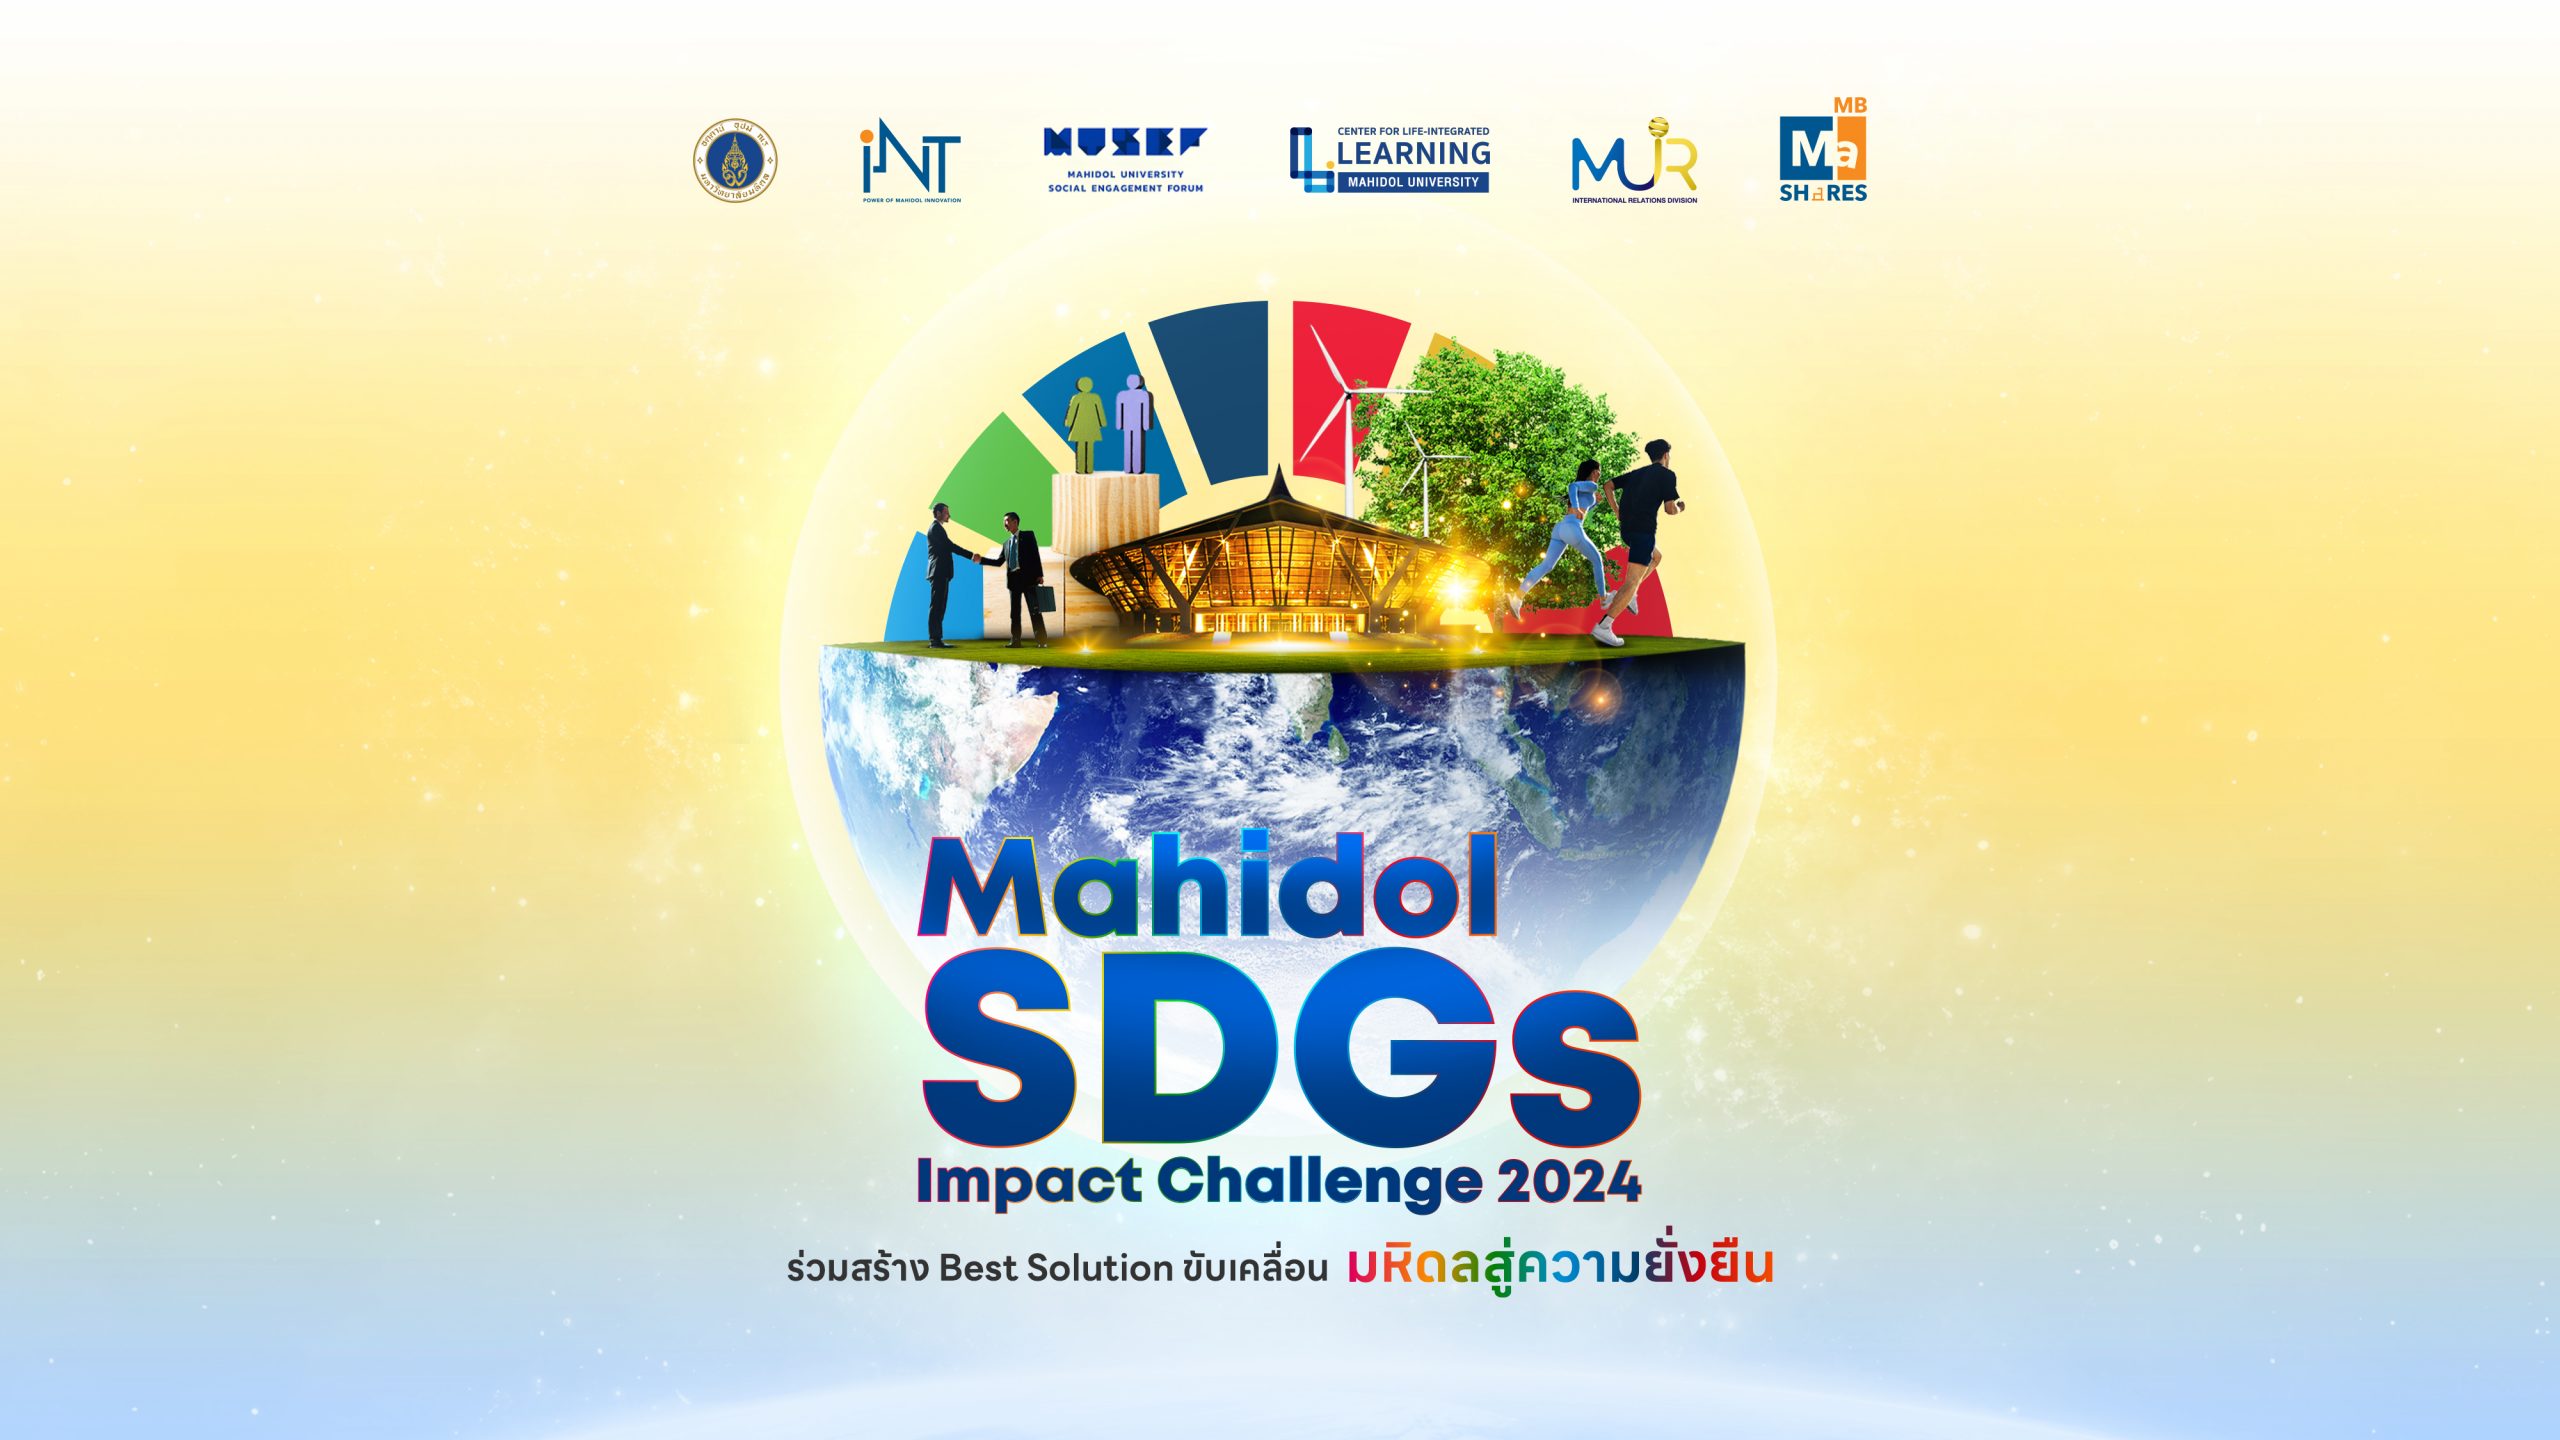 เชิญชวนนักศึกษามหาวิทยาลัยมหิดล ที่มีความคิดสร้างสรรค์ ชอบความท้าทายและแก้ปัญหา เข้าร่วมการแข่งขัน "Mahidol SDGs Impact Challenge 2024"